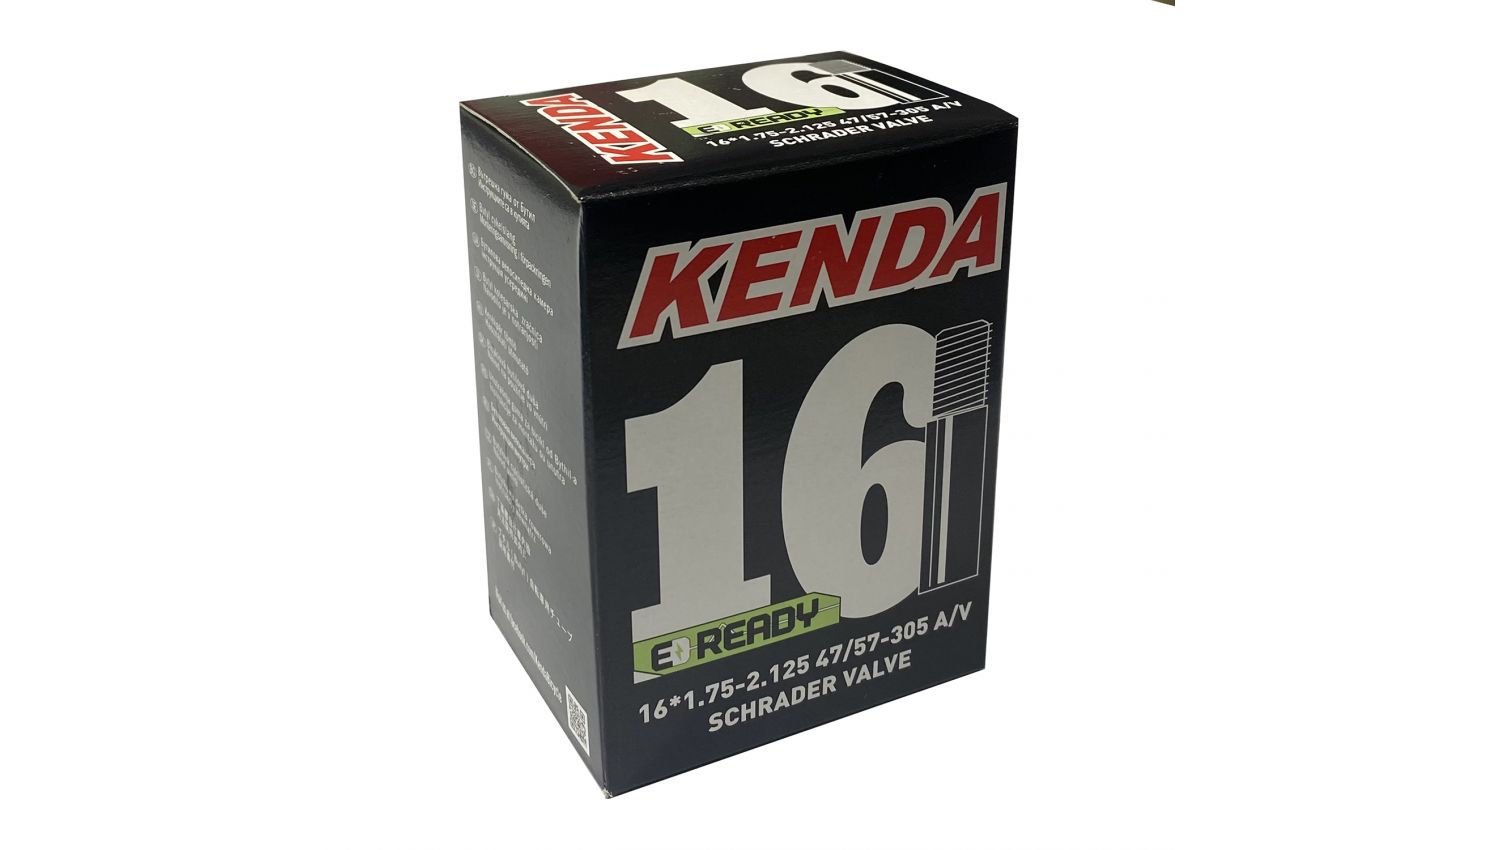 Камера KENDA 16х1.75-2,125, A/V, 47/57-305, в коробке